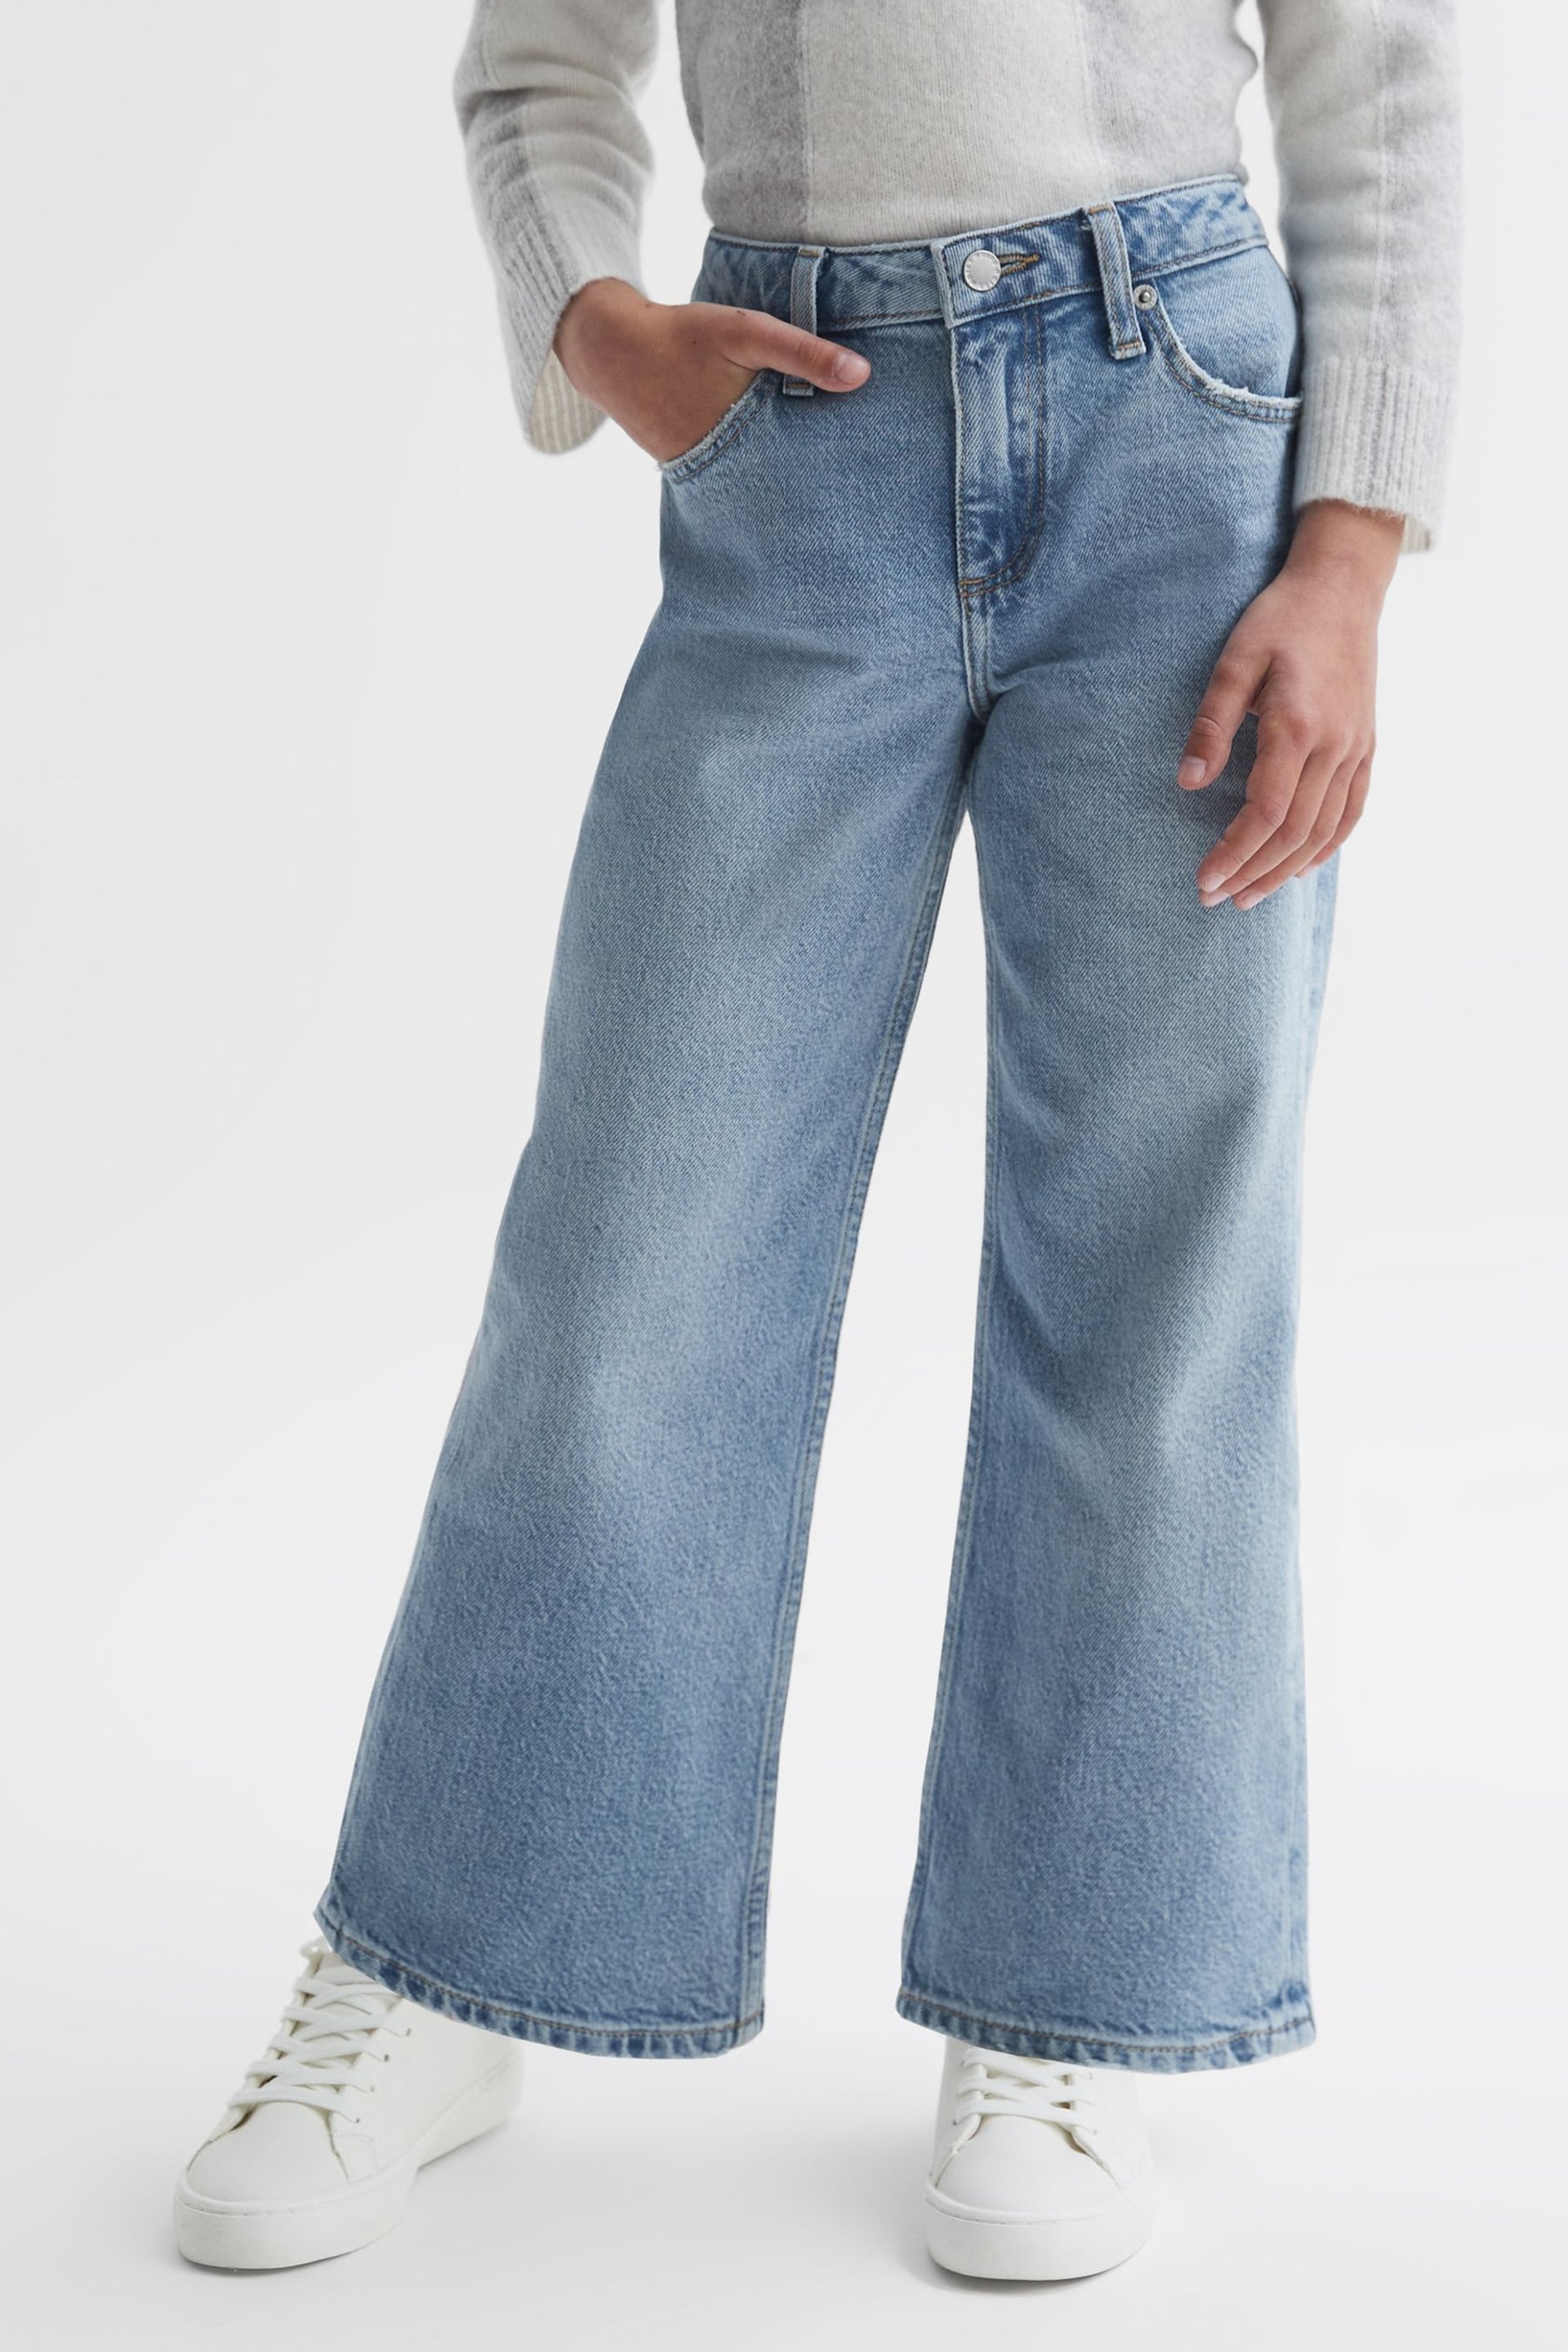 Reiss Denim Marion Senior Straight Leg Sequin Detail Jeans - Image 3 of 6